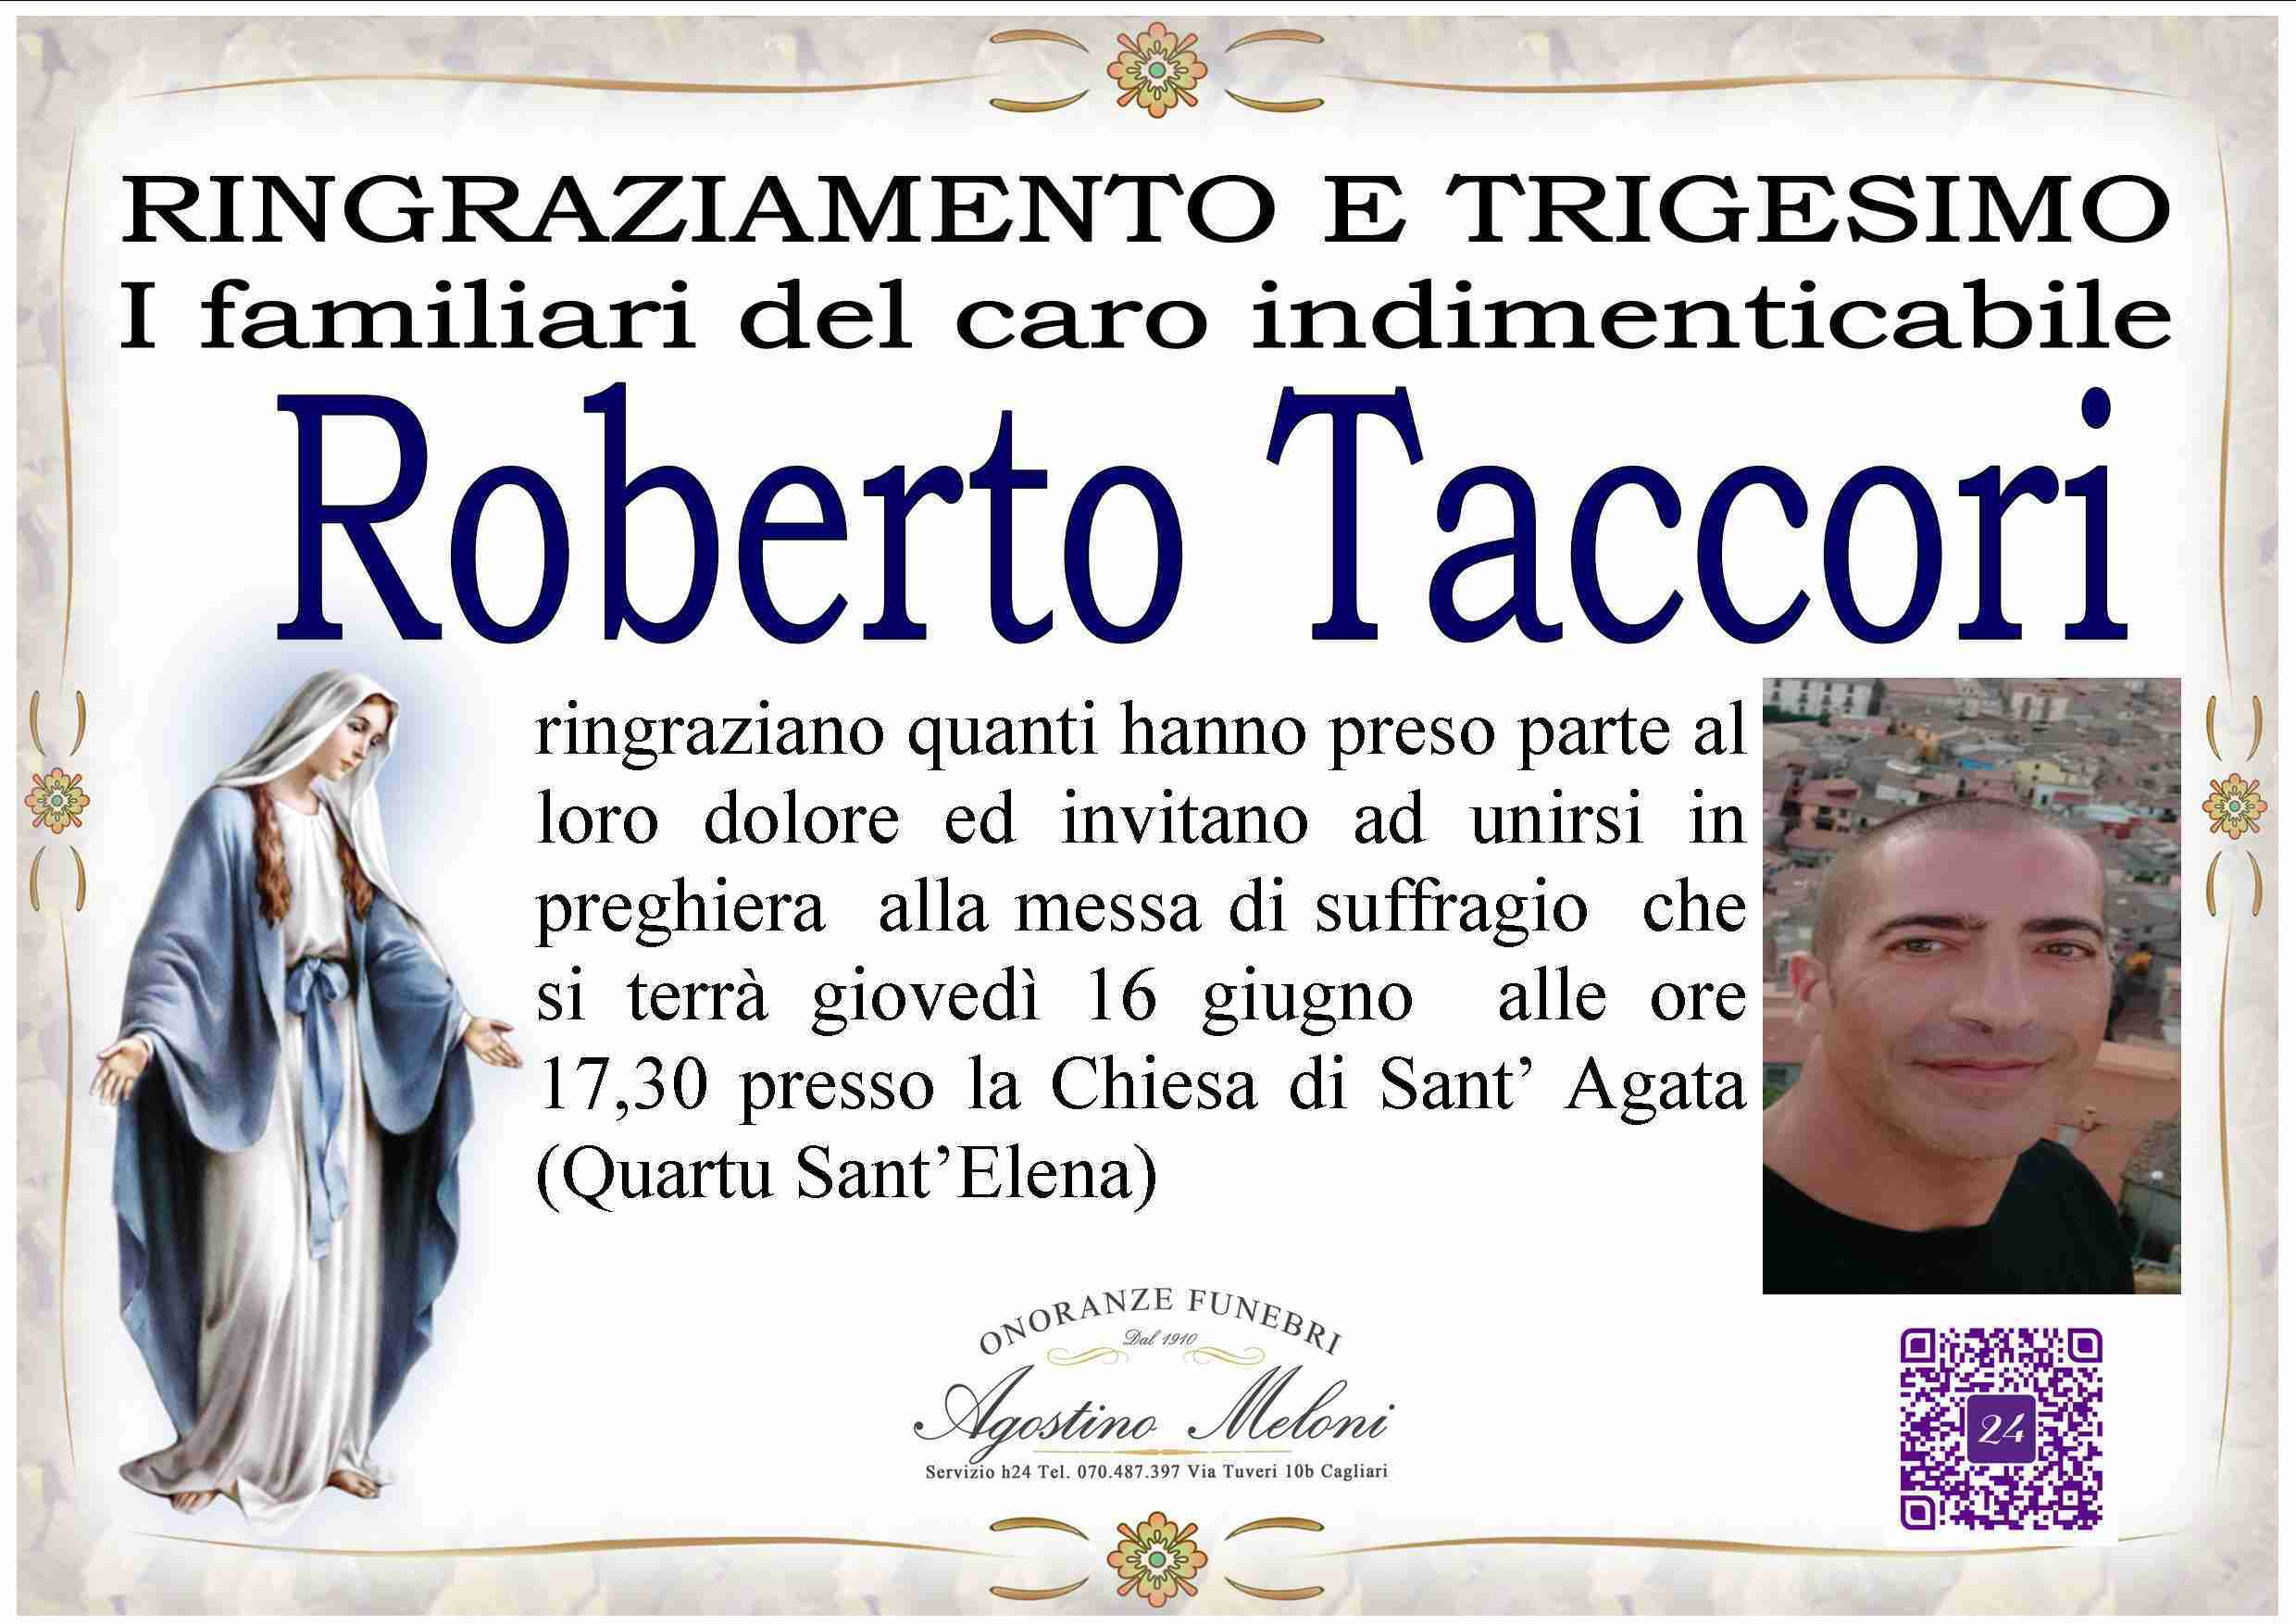 Roberto Taccori